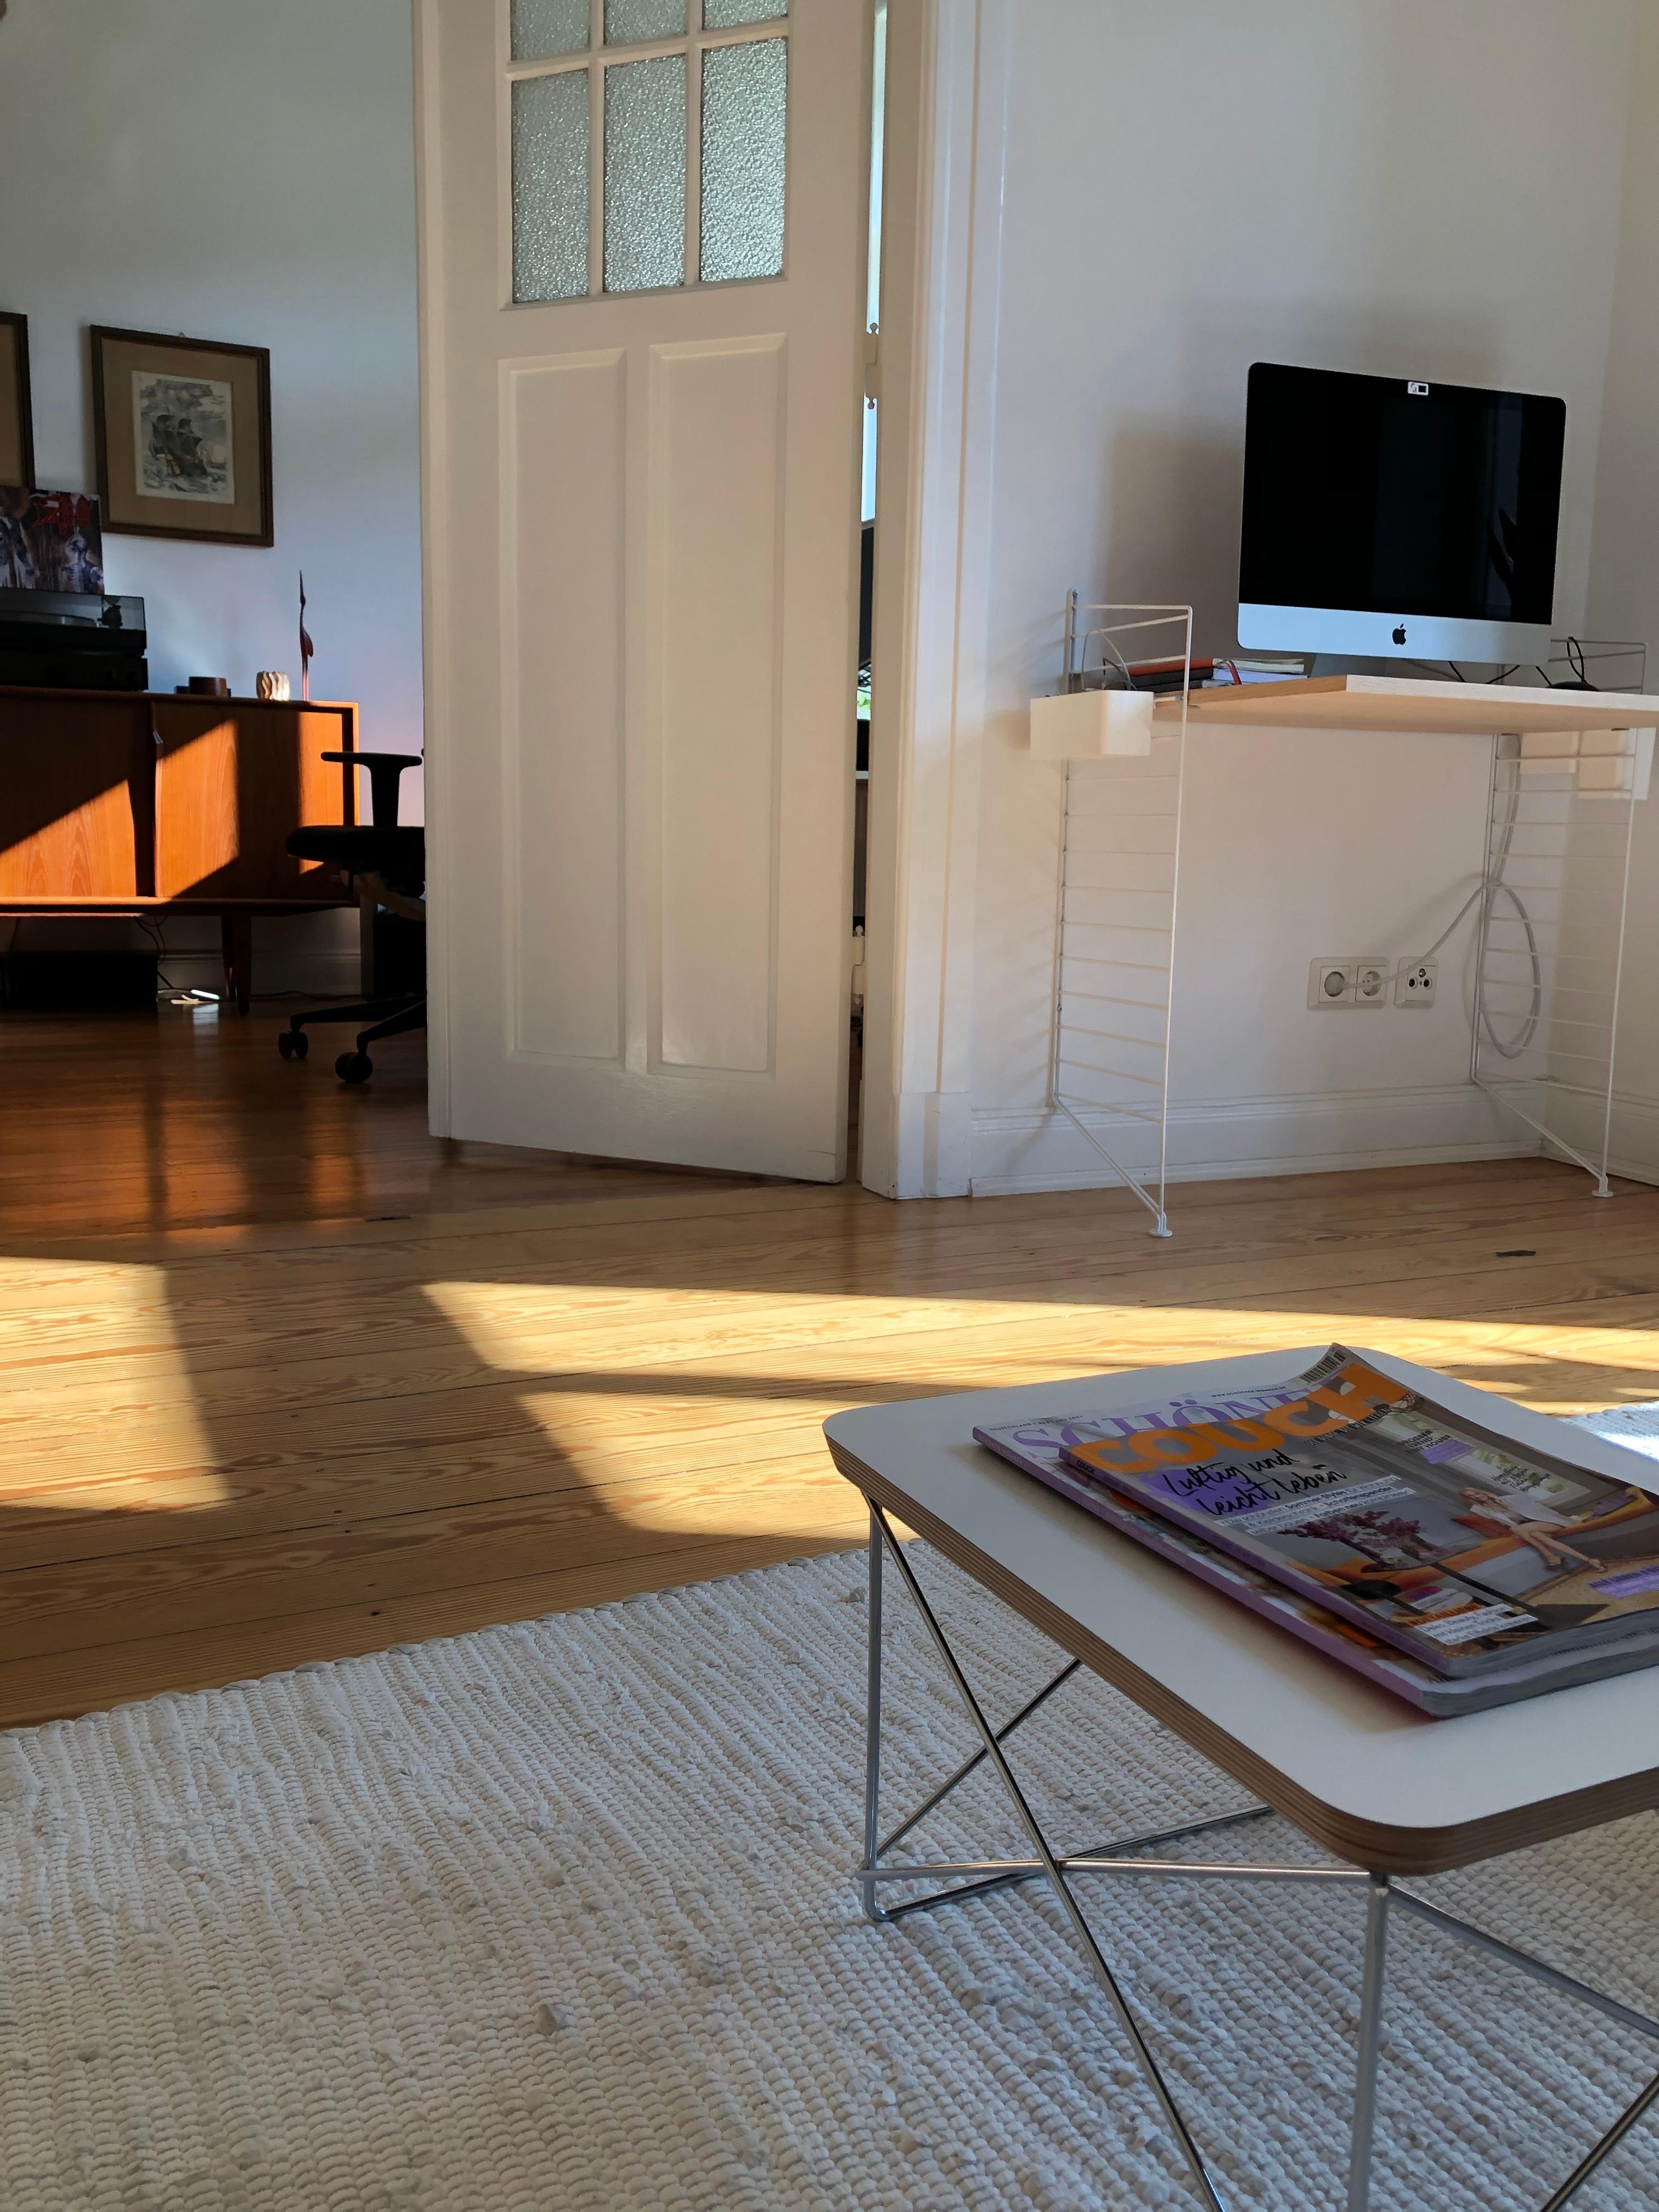 Lesend entspannen und das Wochenende ausklingen lassen: #couch #wohnzimmer #schönerwohnen #interior #altbauliebe #licht